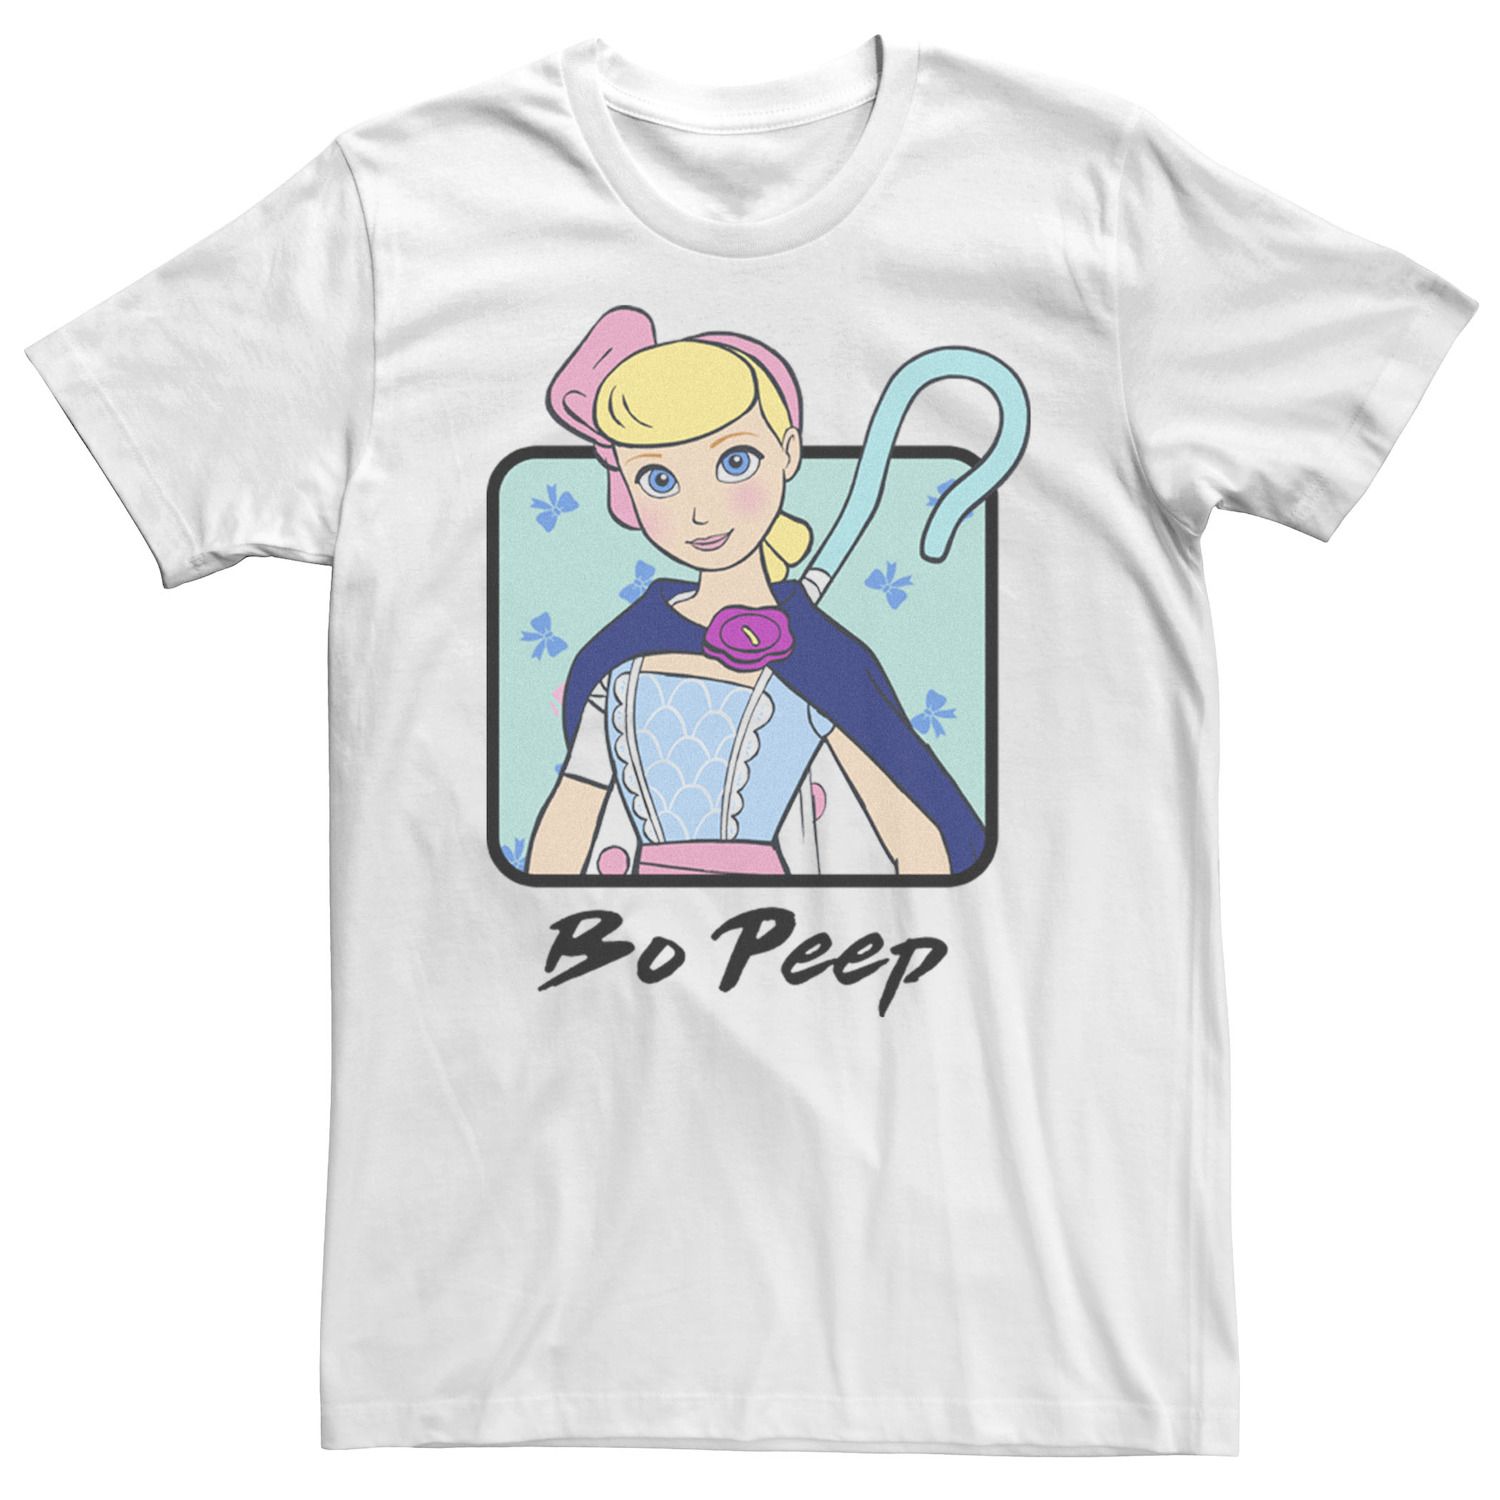 Мужская футболка Toy Story 4 Bo Peep с цветным бюстом и портретом Disney / Pixar